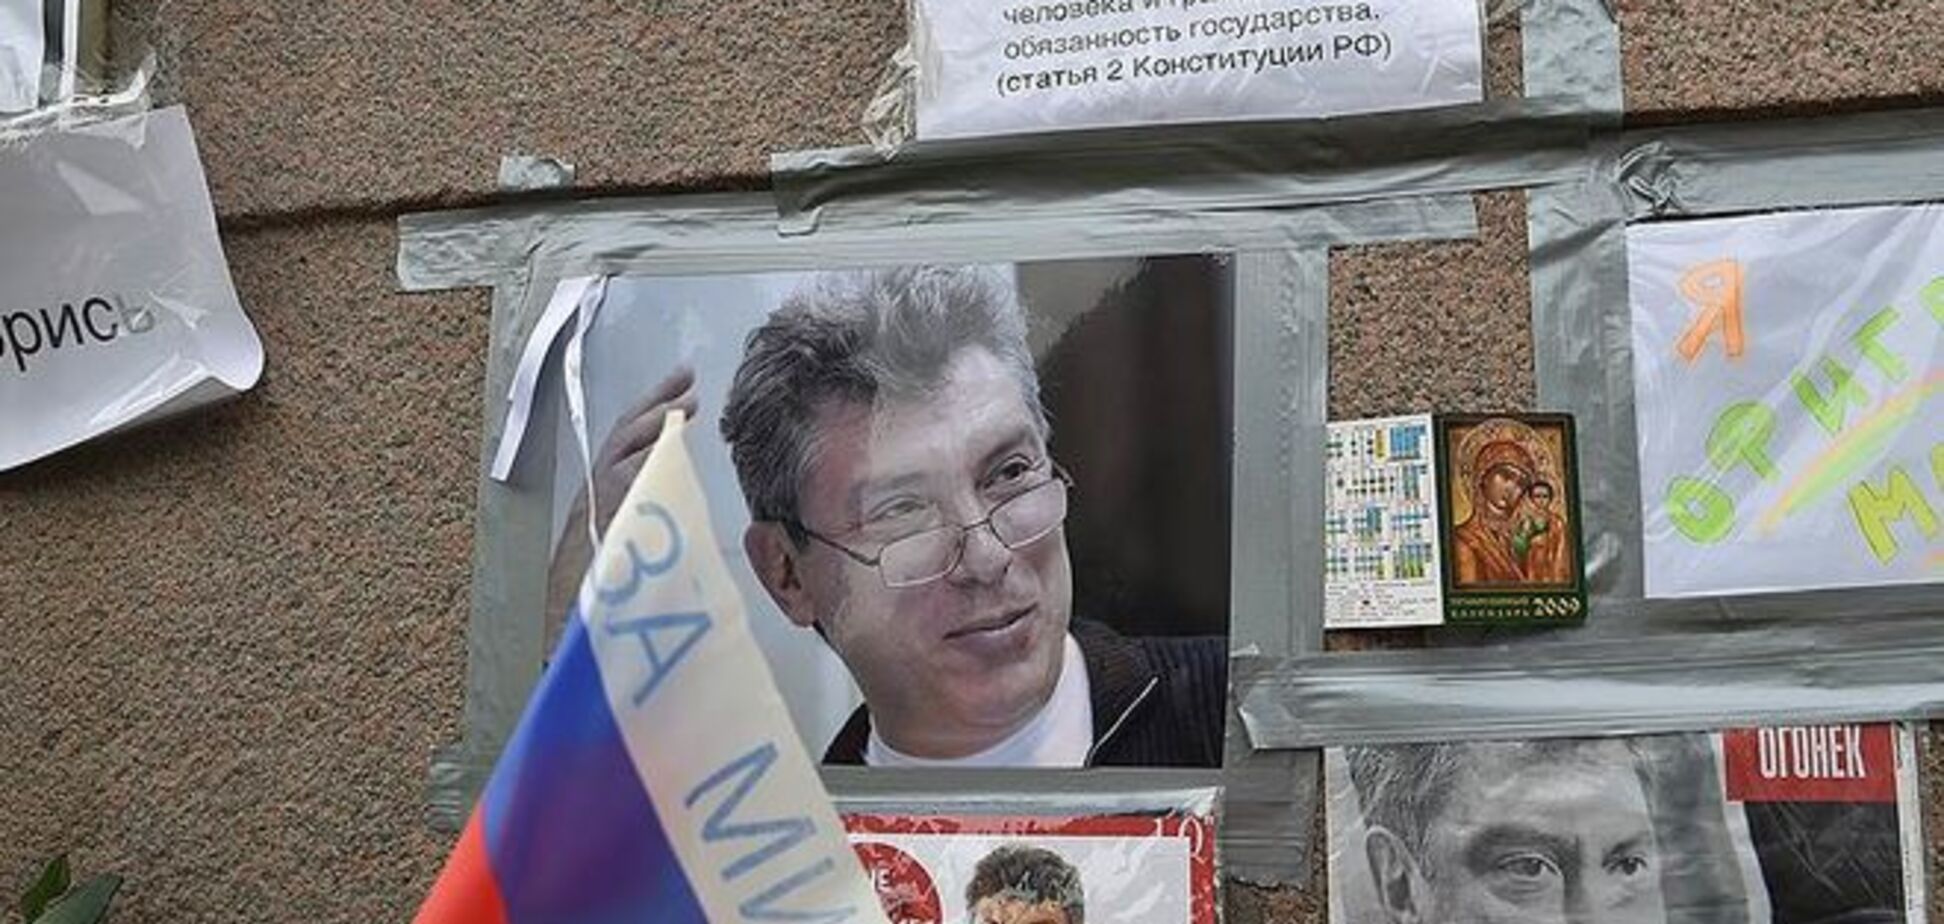 Следствие узнало имя организатора убийства Немцова – СМИ 